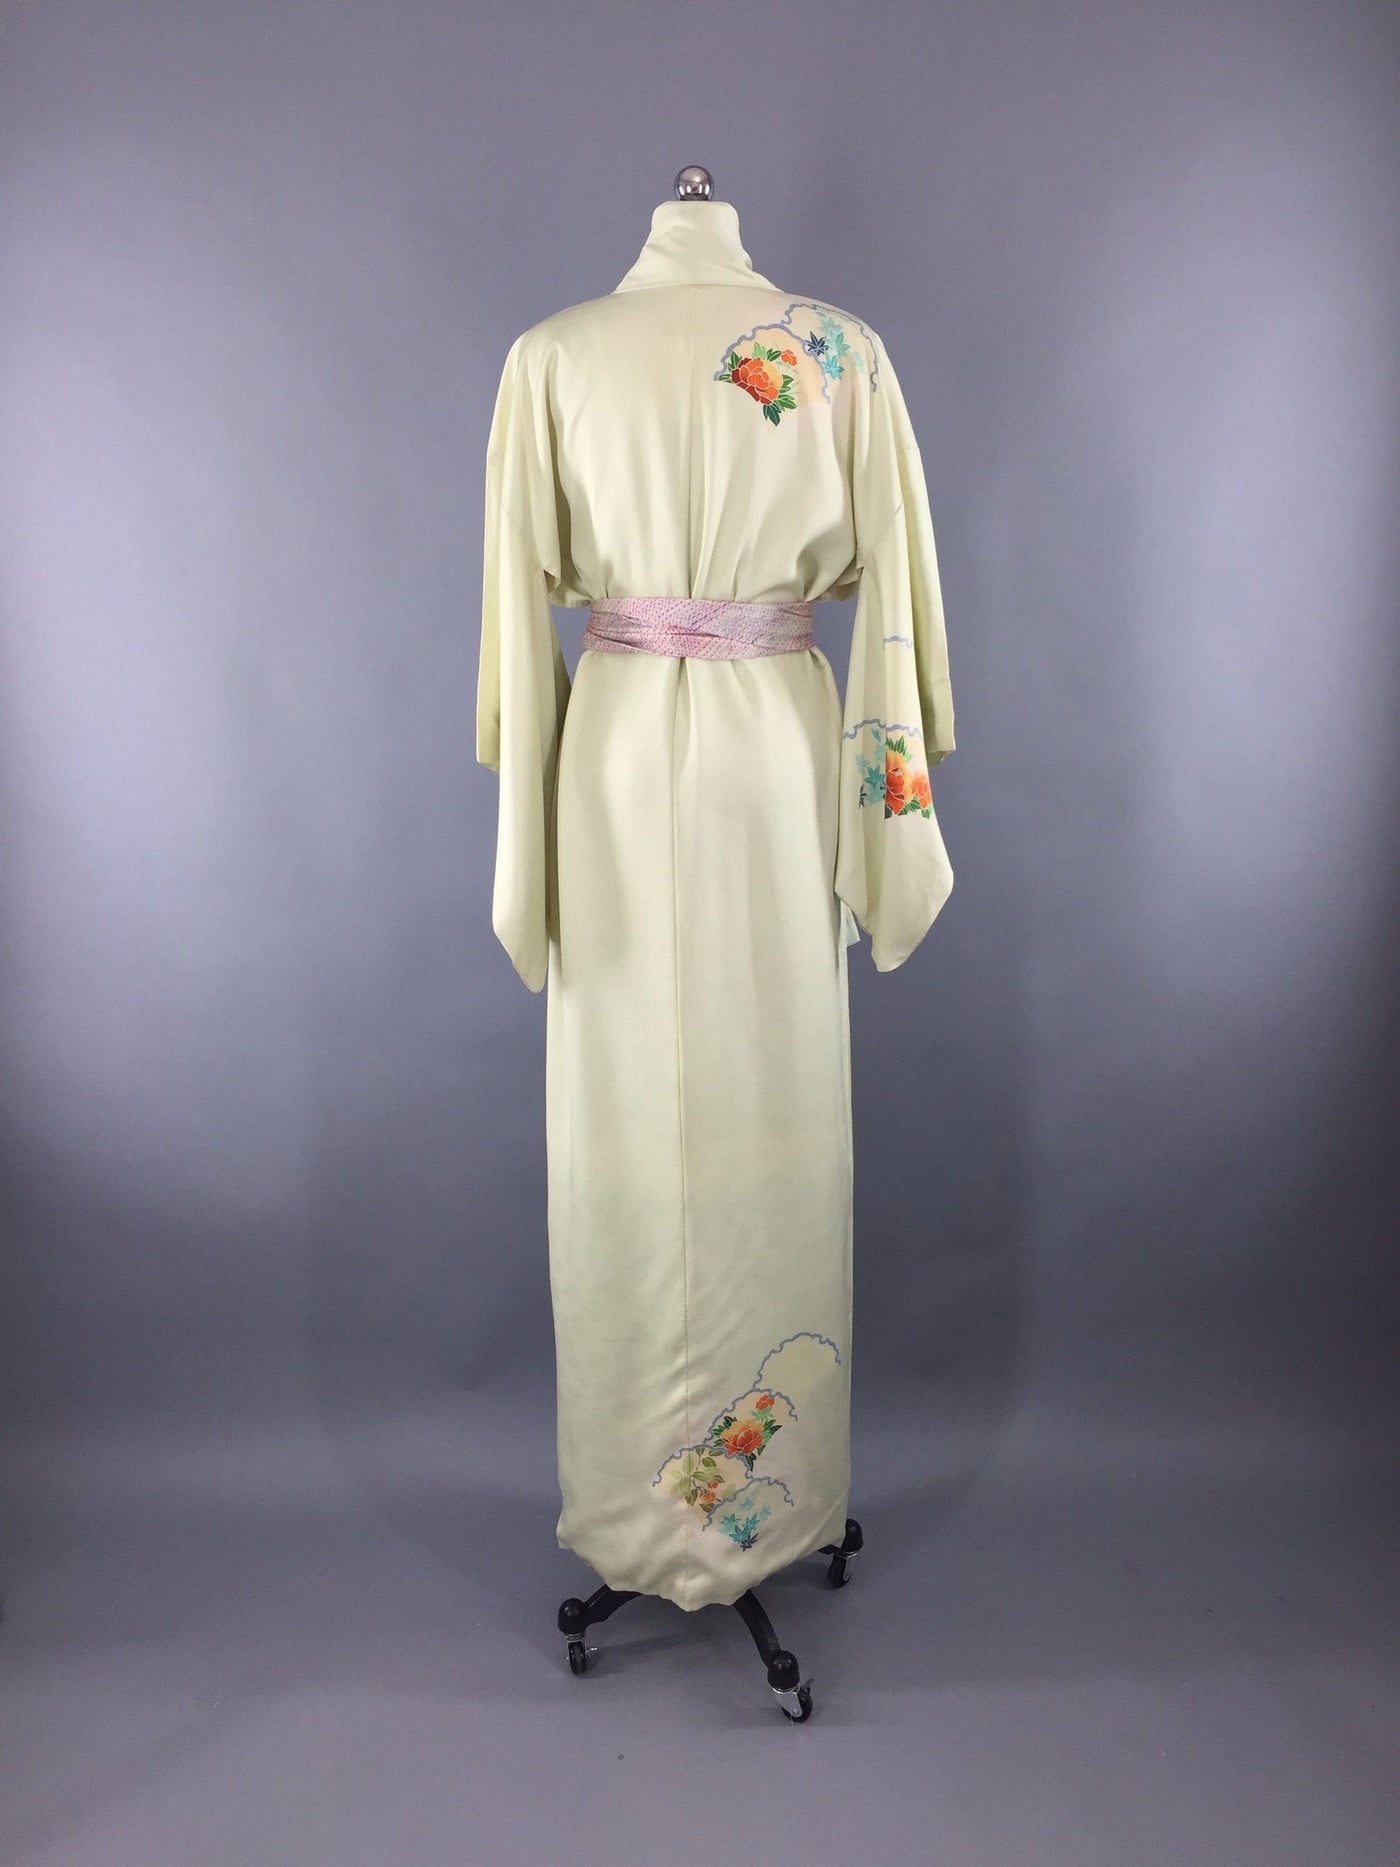 Vintage 1950s Kimono Robe / Spring Green Floral Print – ThisBlueBird